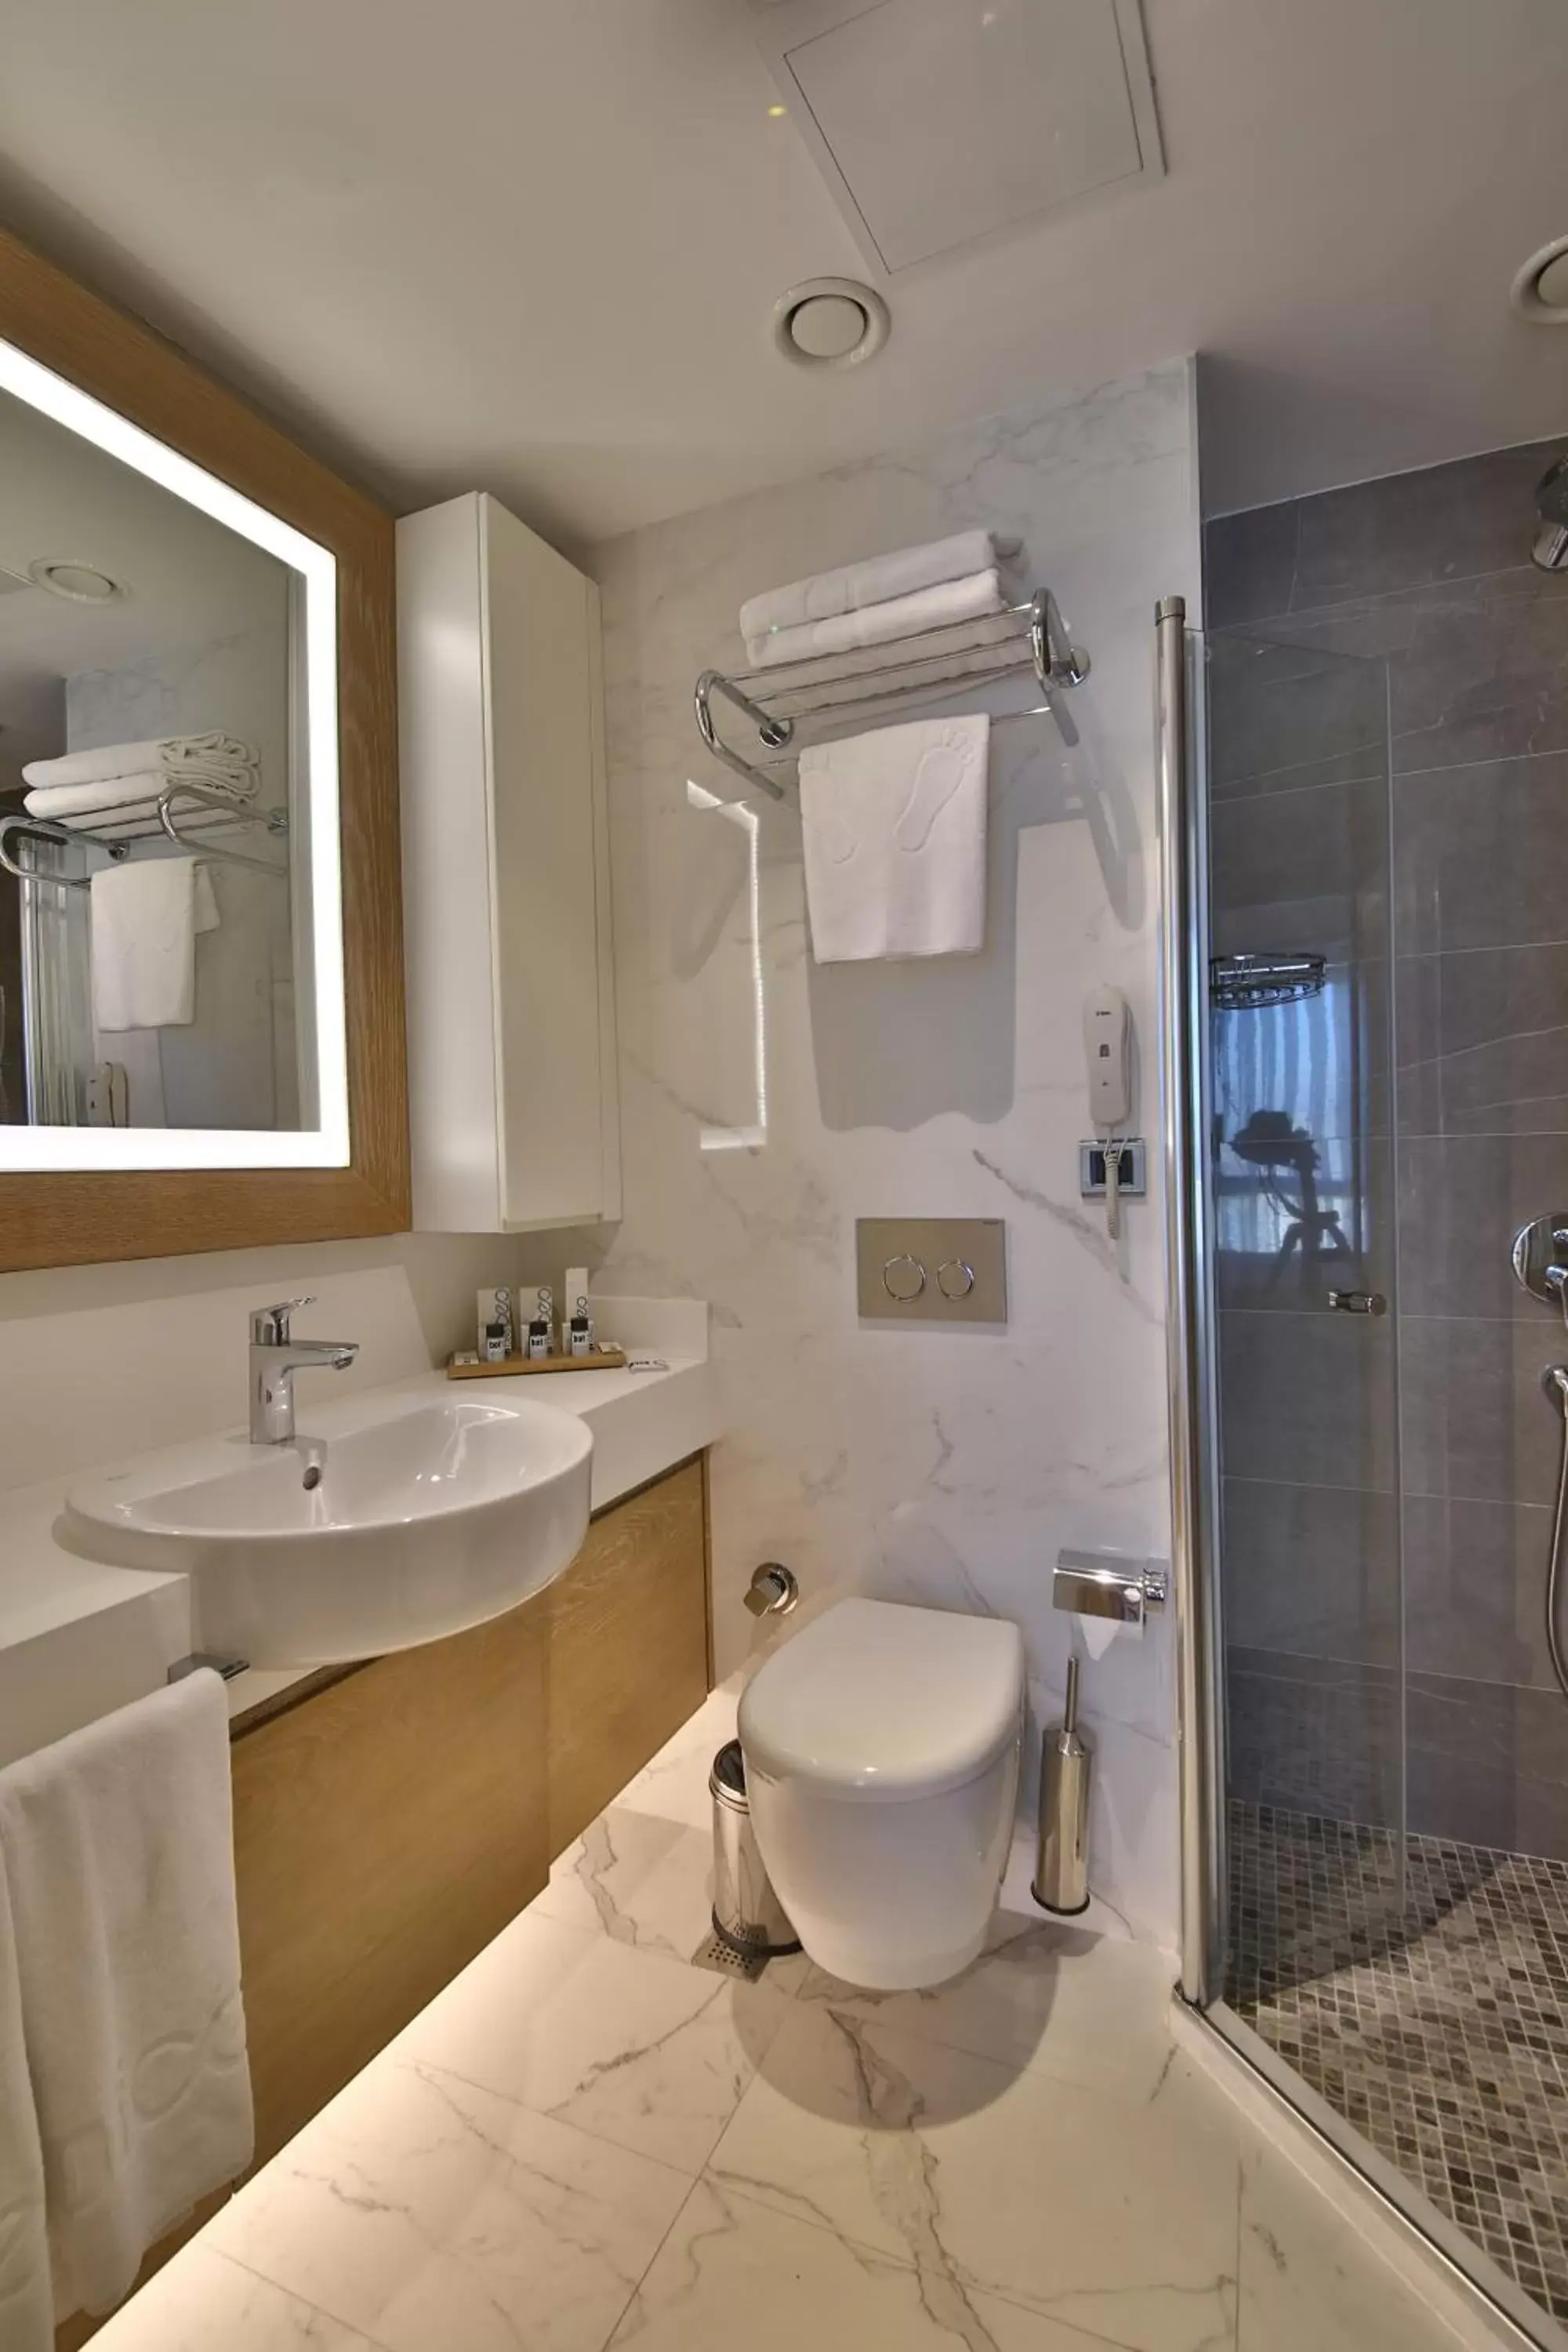 Toilet, Bathroom in Bof Hotels Ceo Suites Atasehir